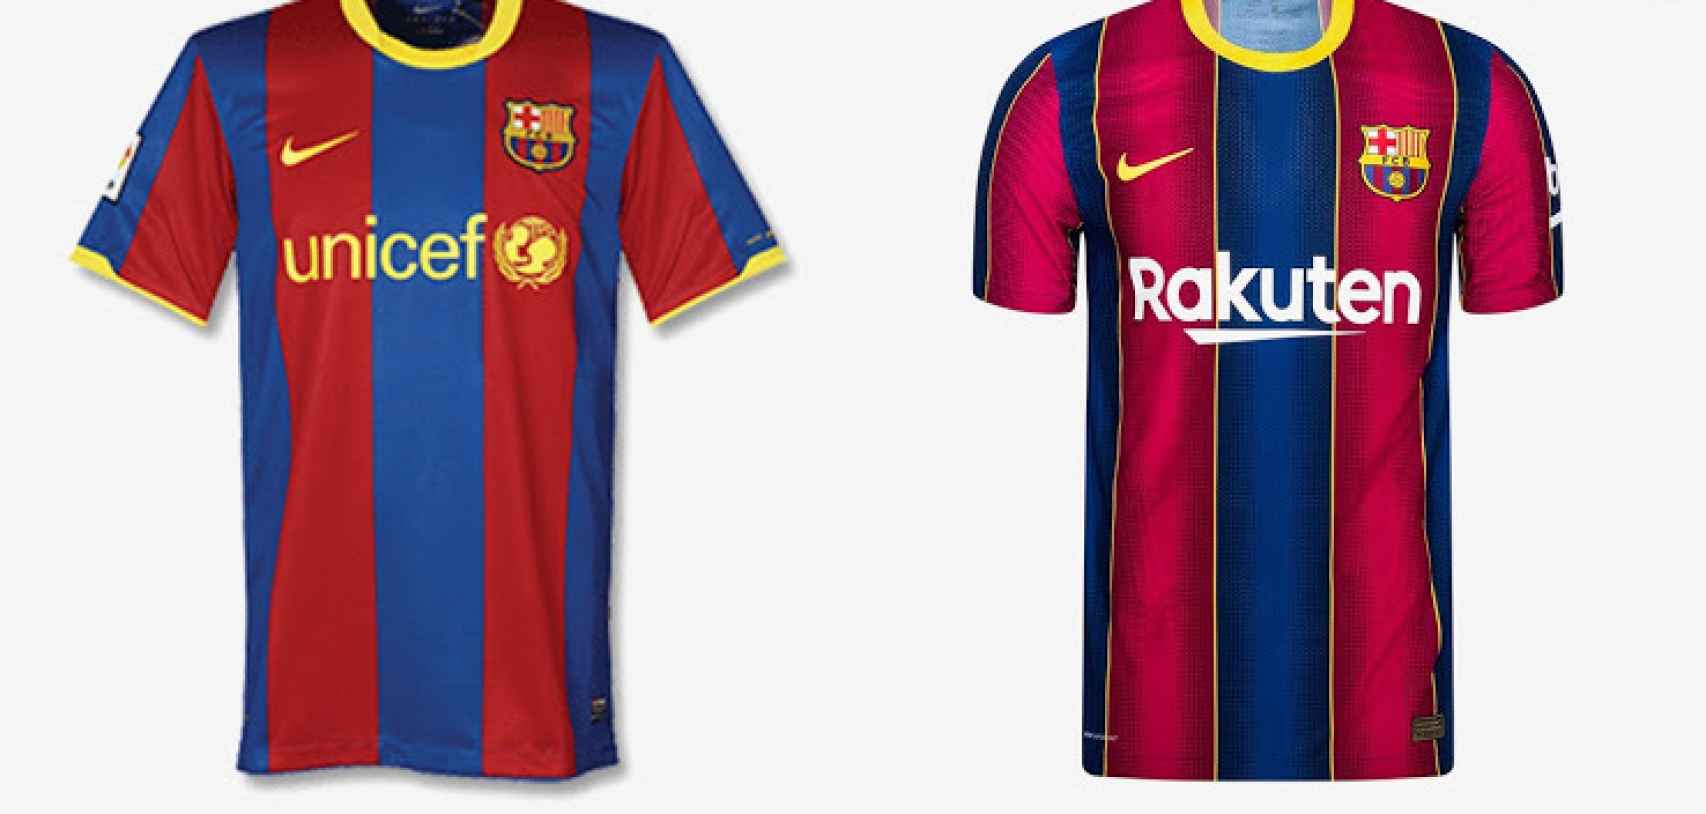 Comparación equipaciones Barça 2010/2011 - 2020/2021